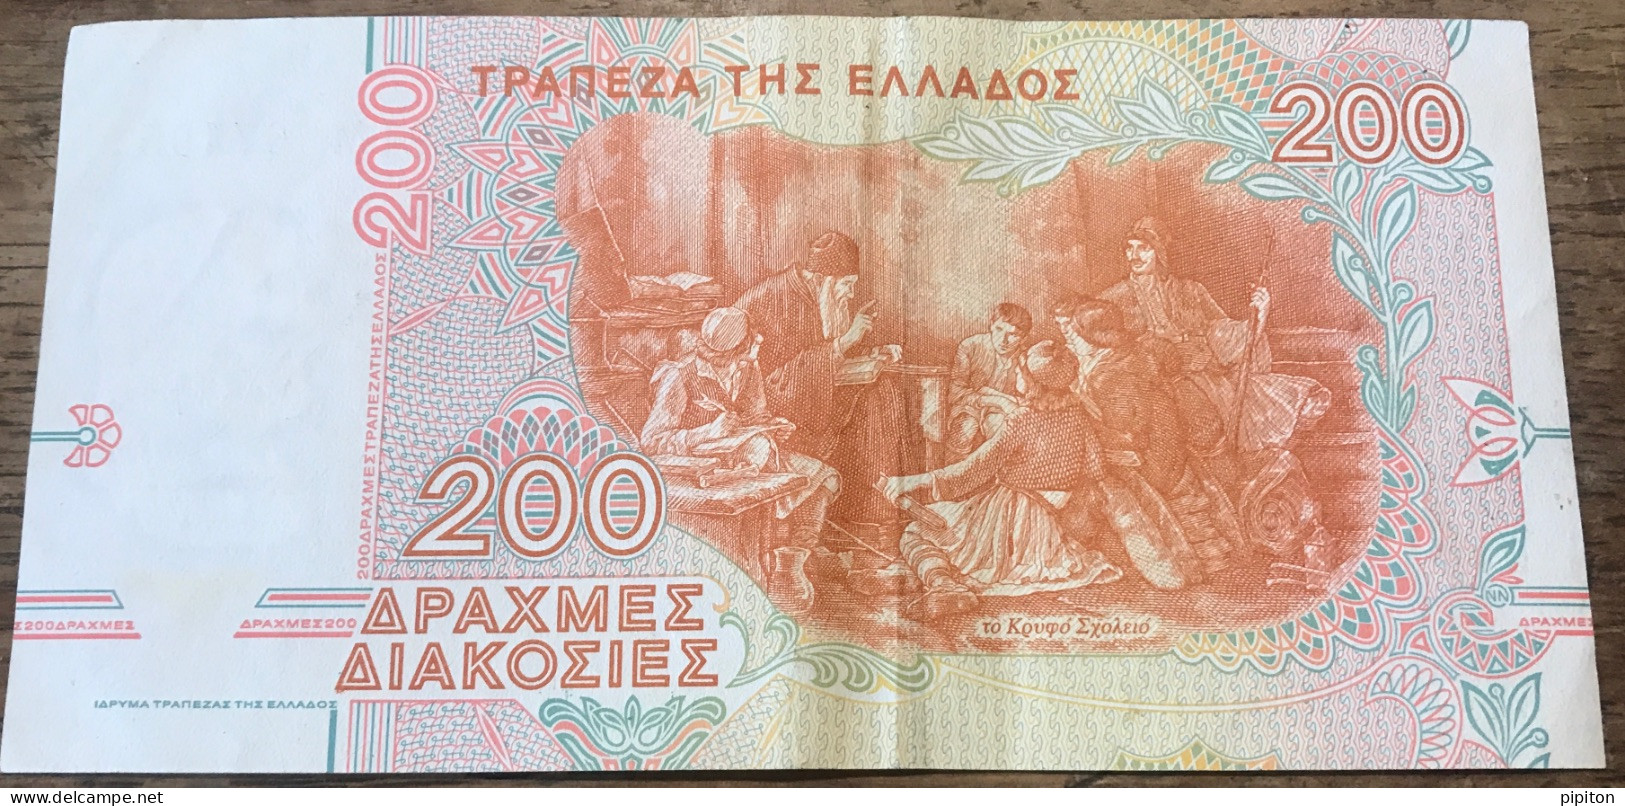 2 Billets De 200 Drachmes - Grèce